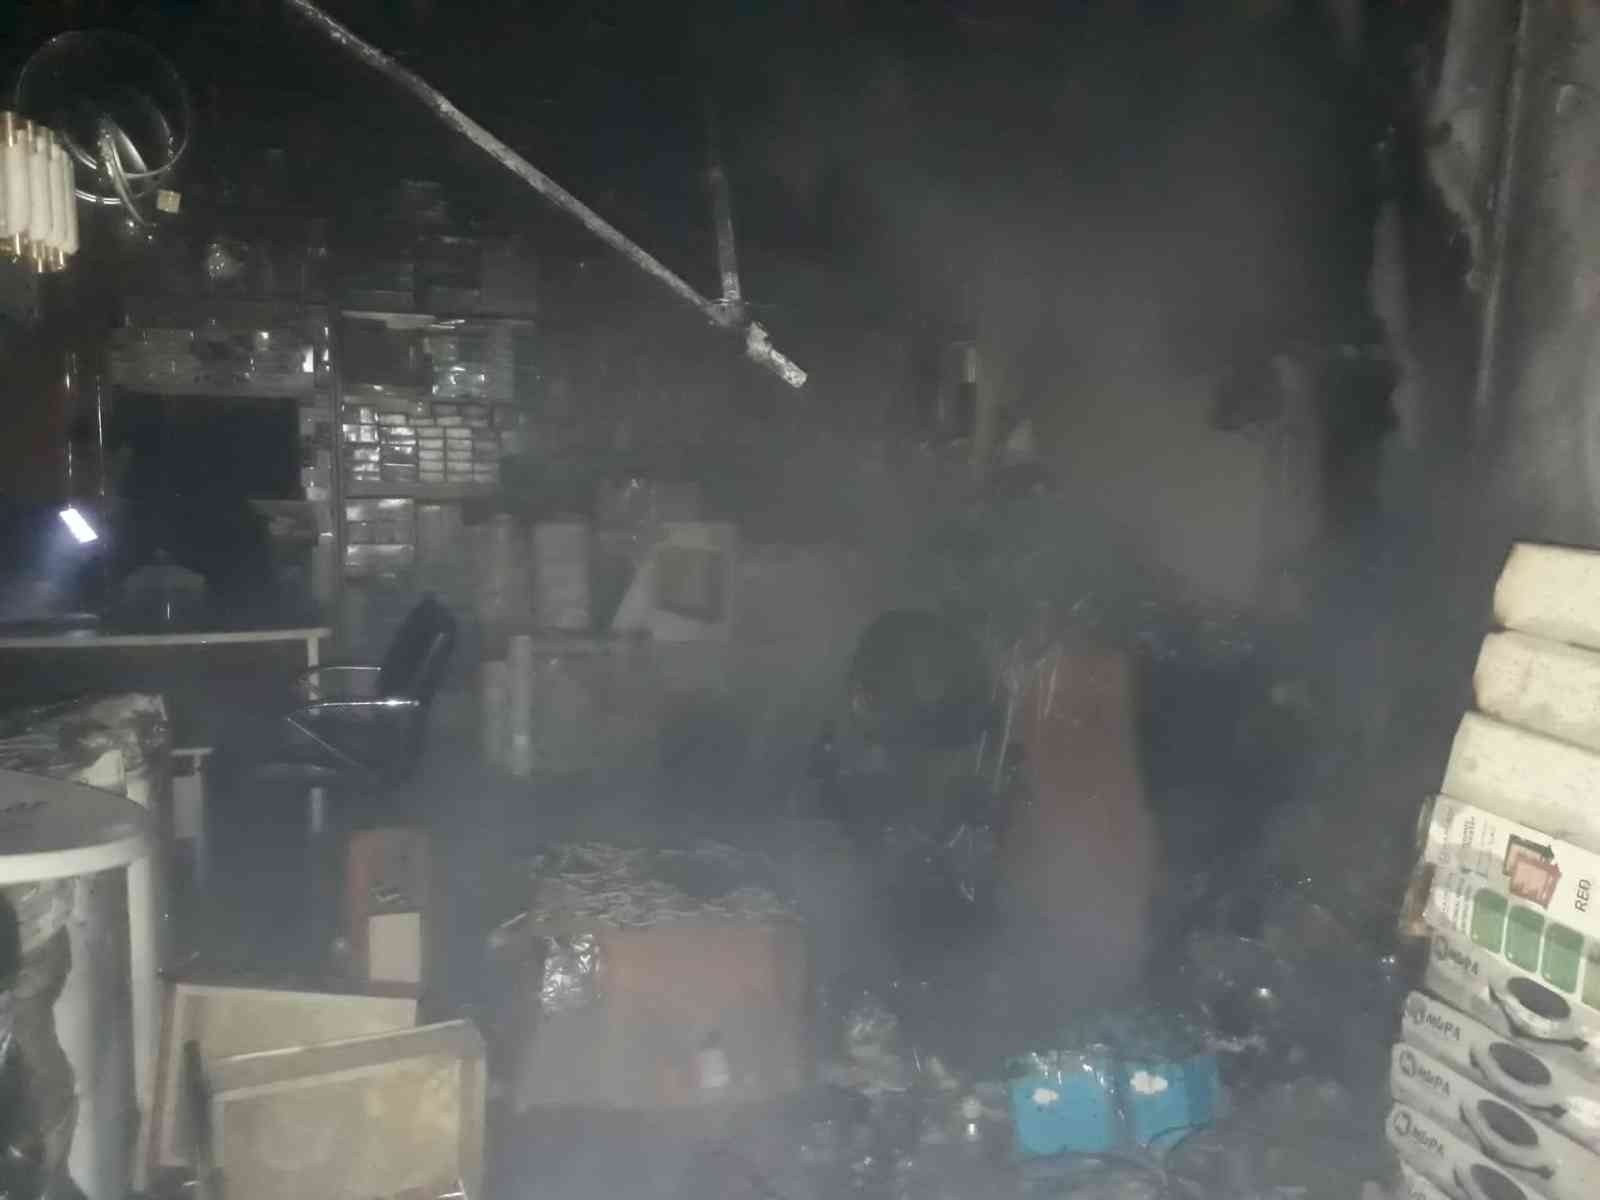 Ağrı’da elektrik dükkanında yangın #agri